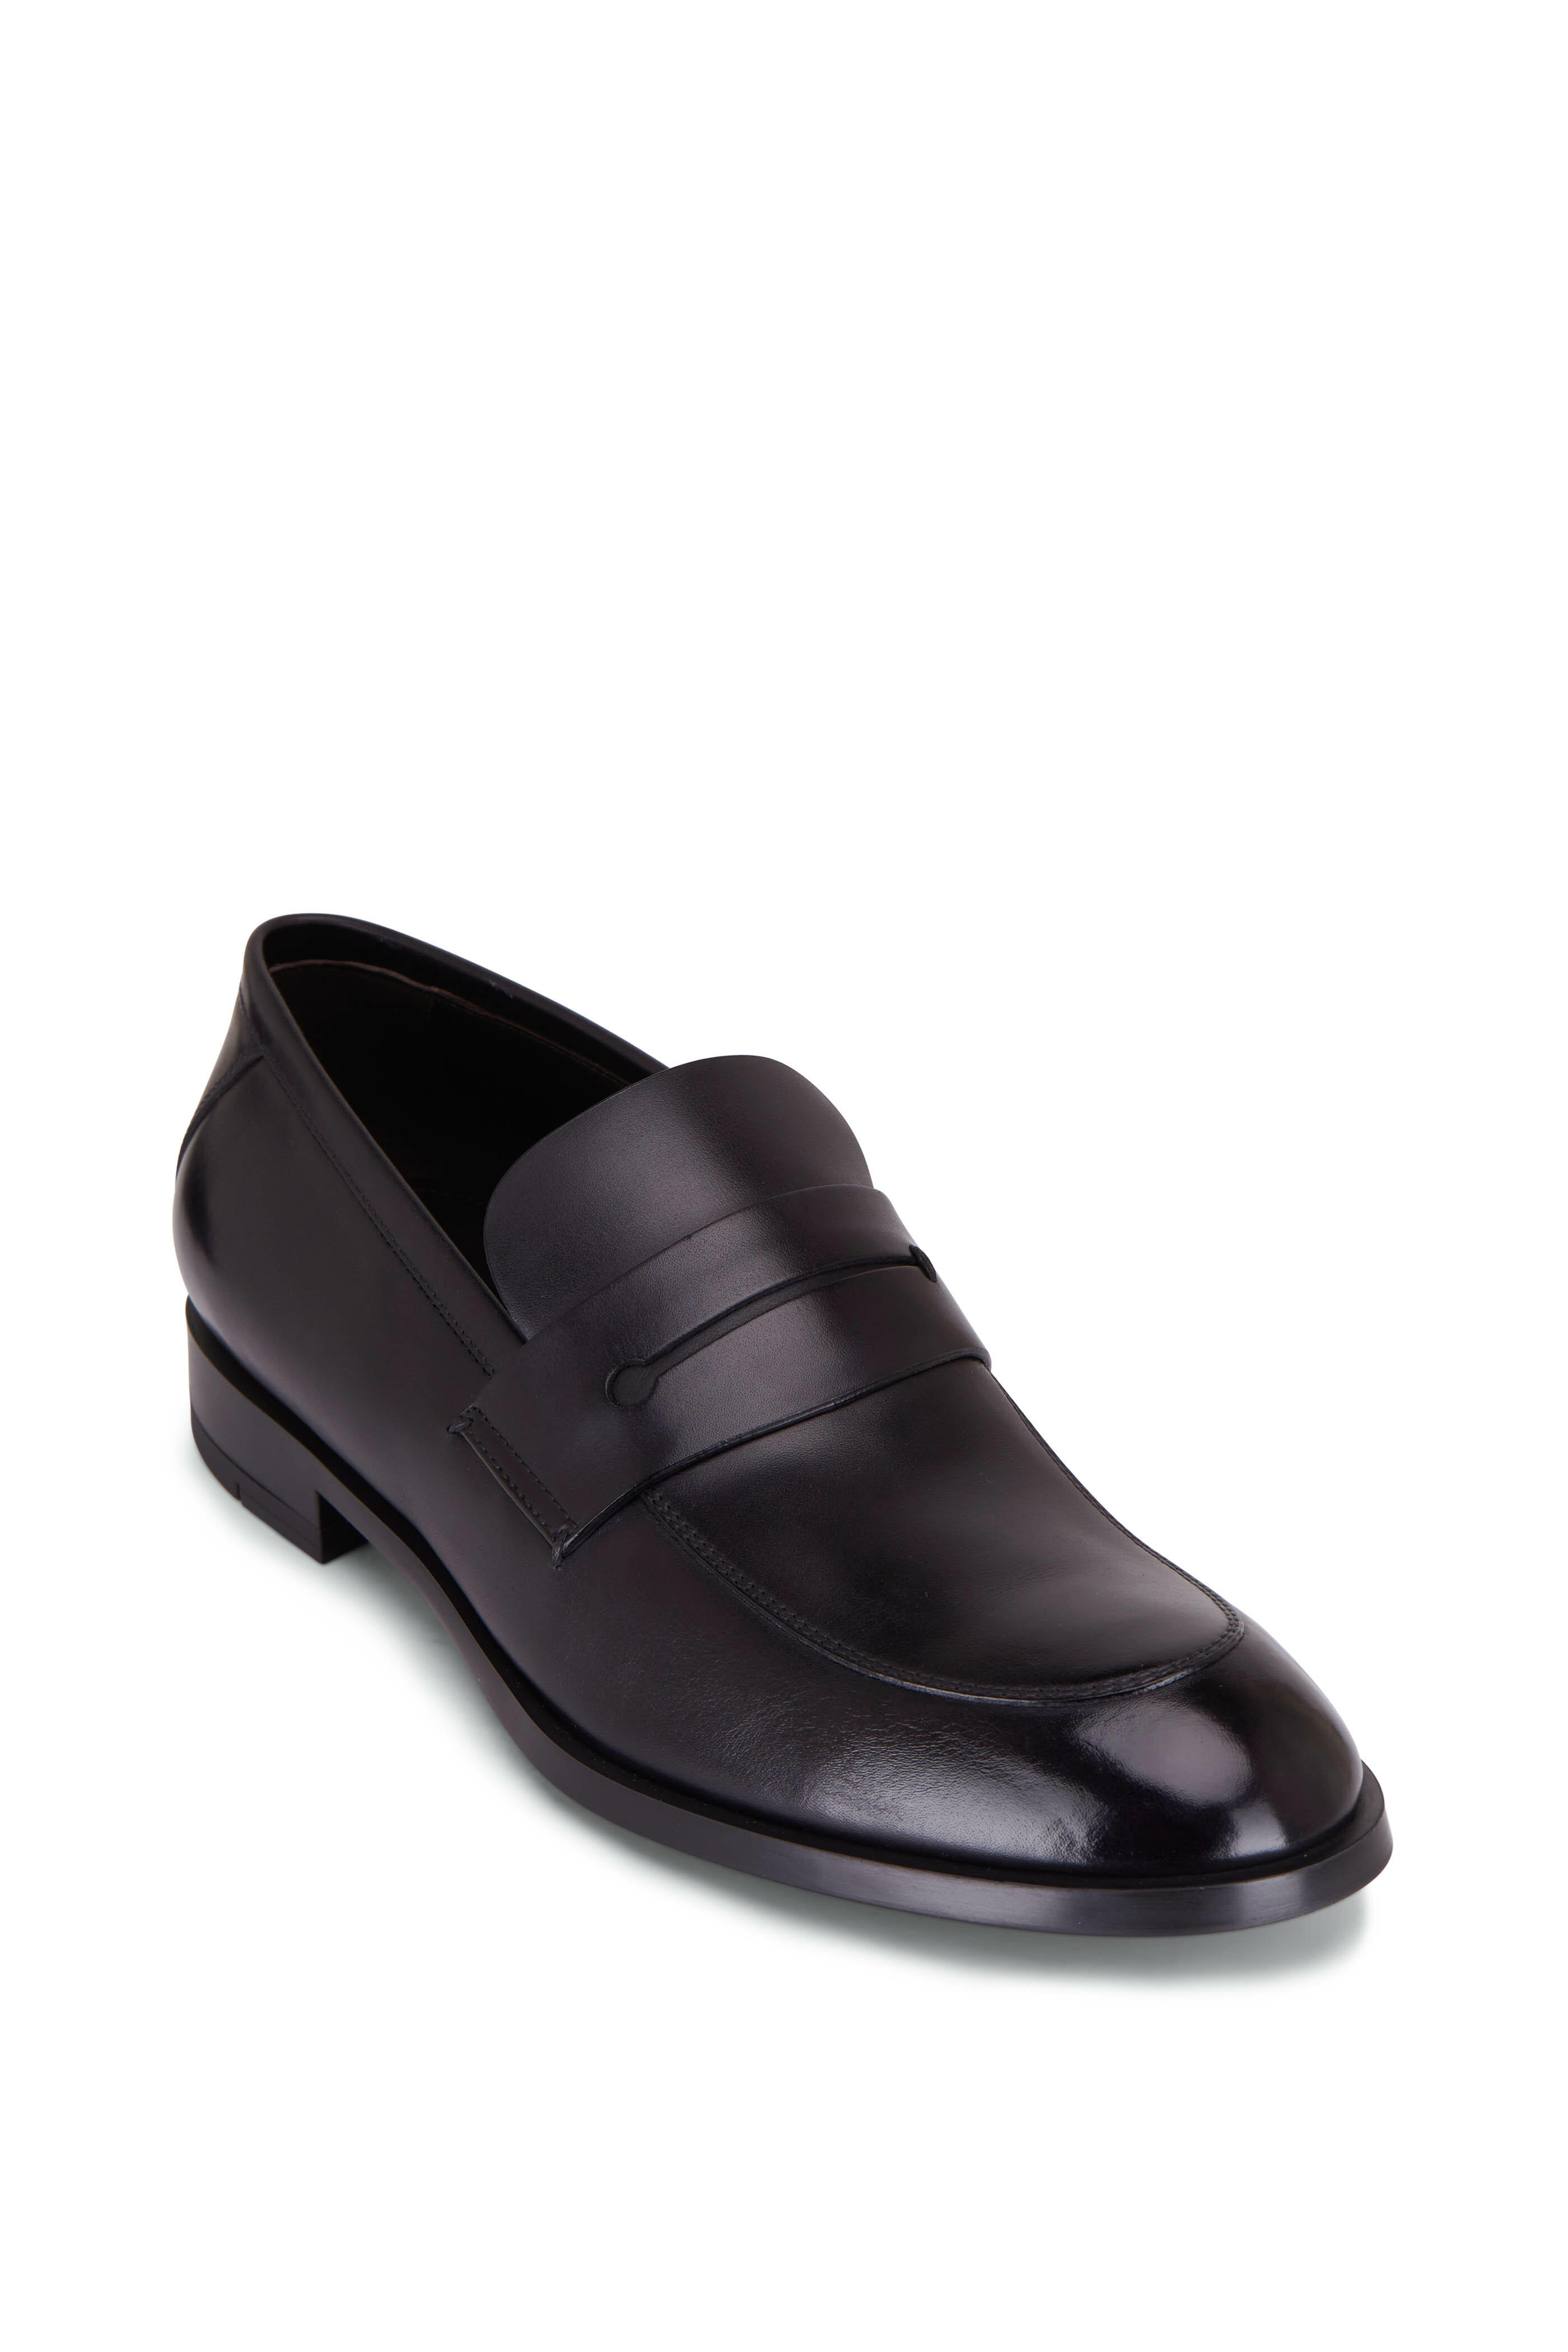 Zegna - Sienna Flex Black Leather Loafer | Mitchell Stores